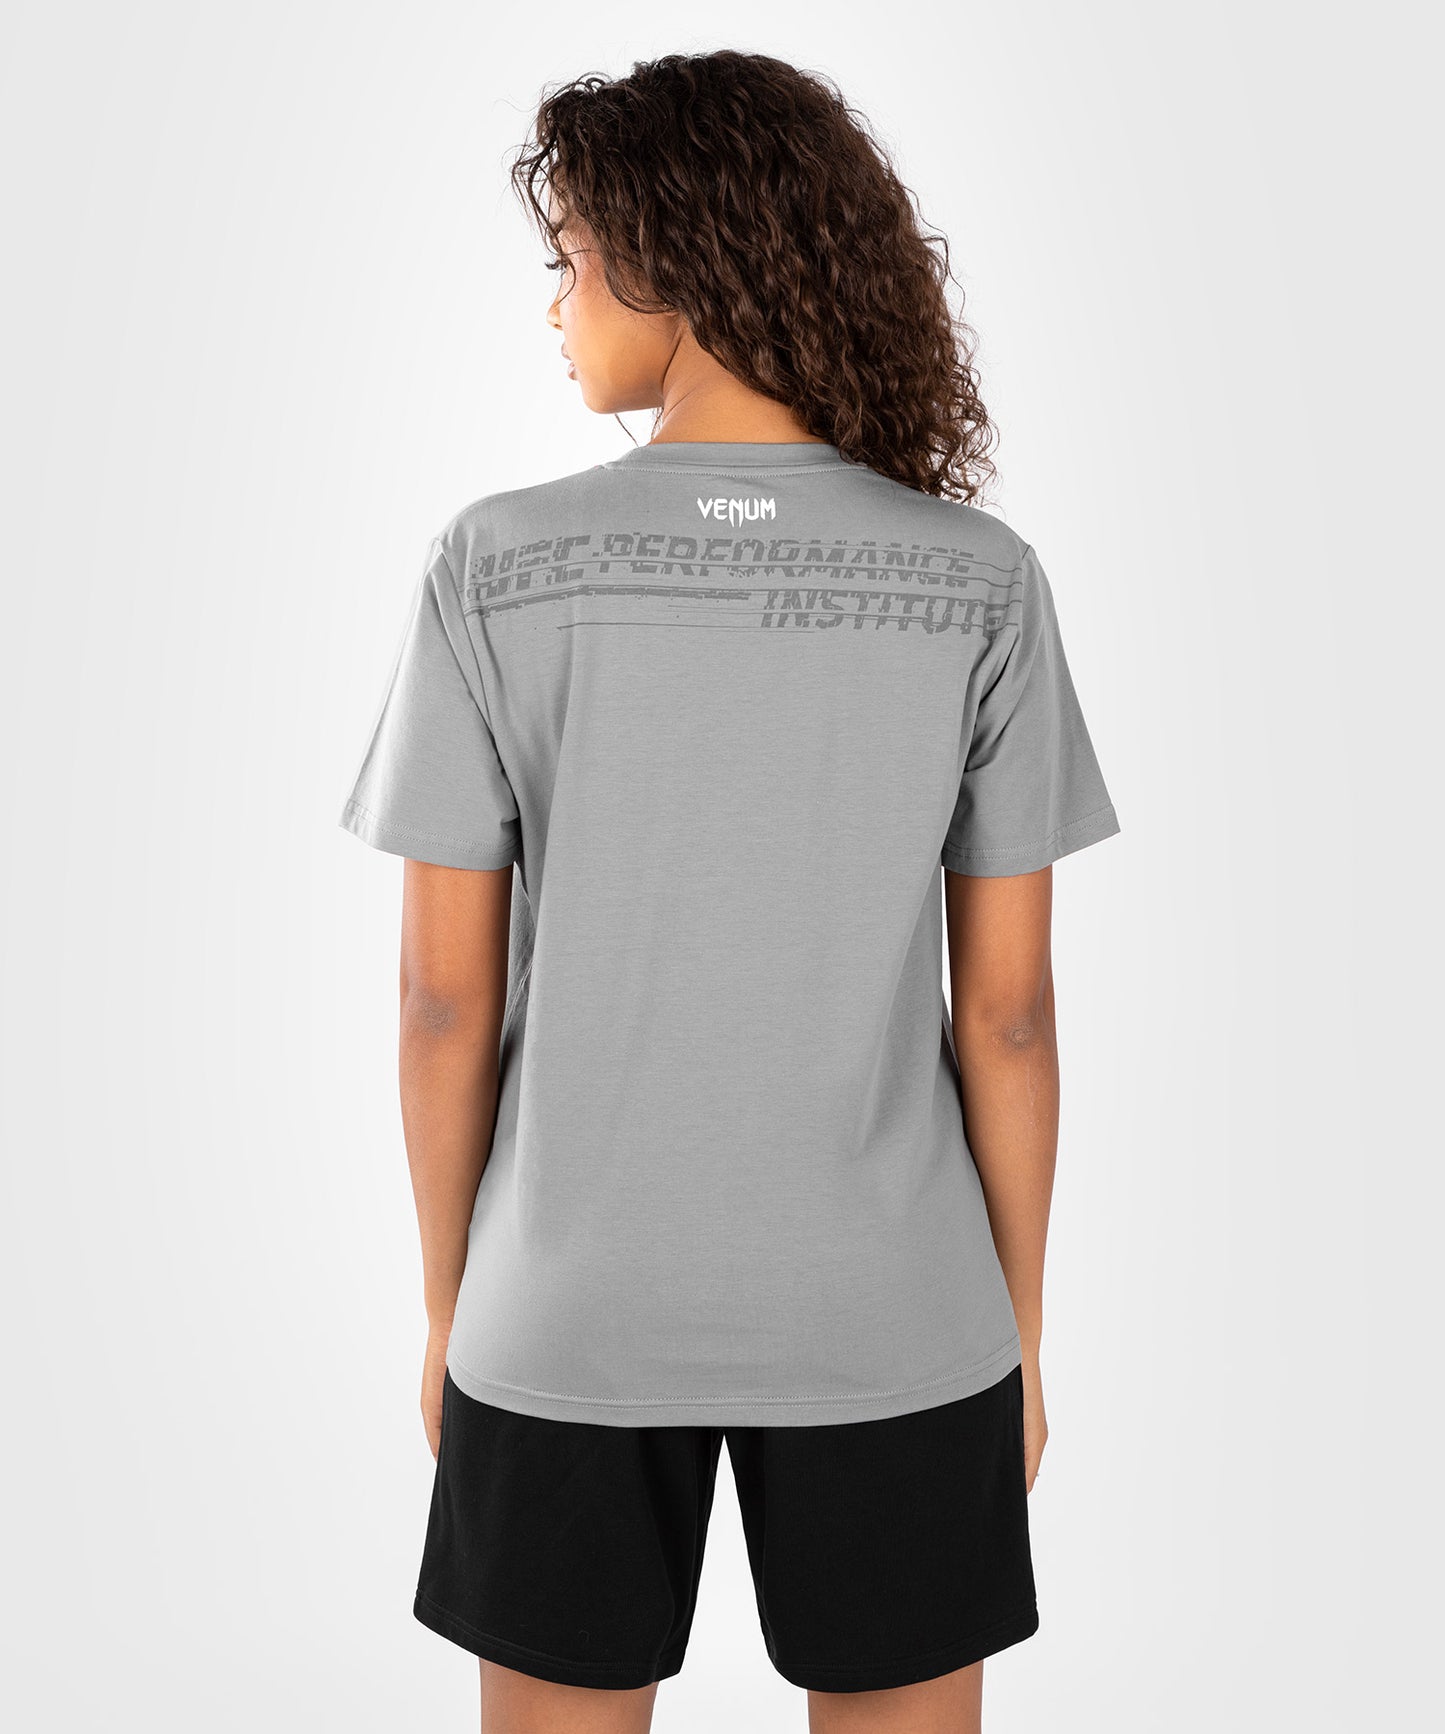 UFC Venum Performance Institute 2.0 T-shirt Grey